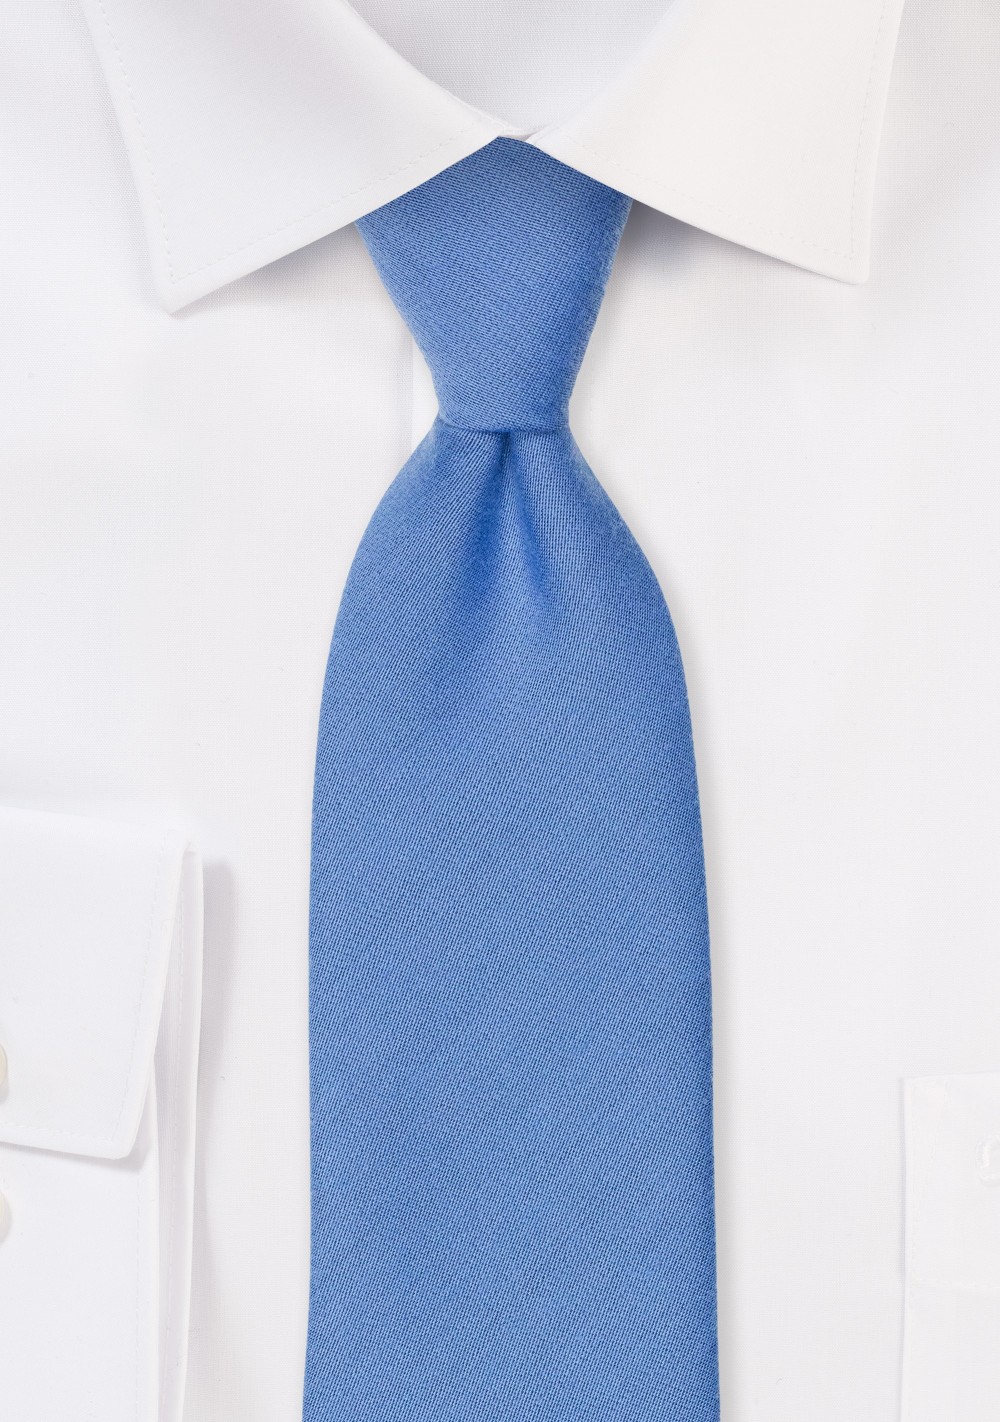 Ash Blue Linen Textured Necktie With Modern Cut